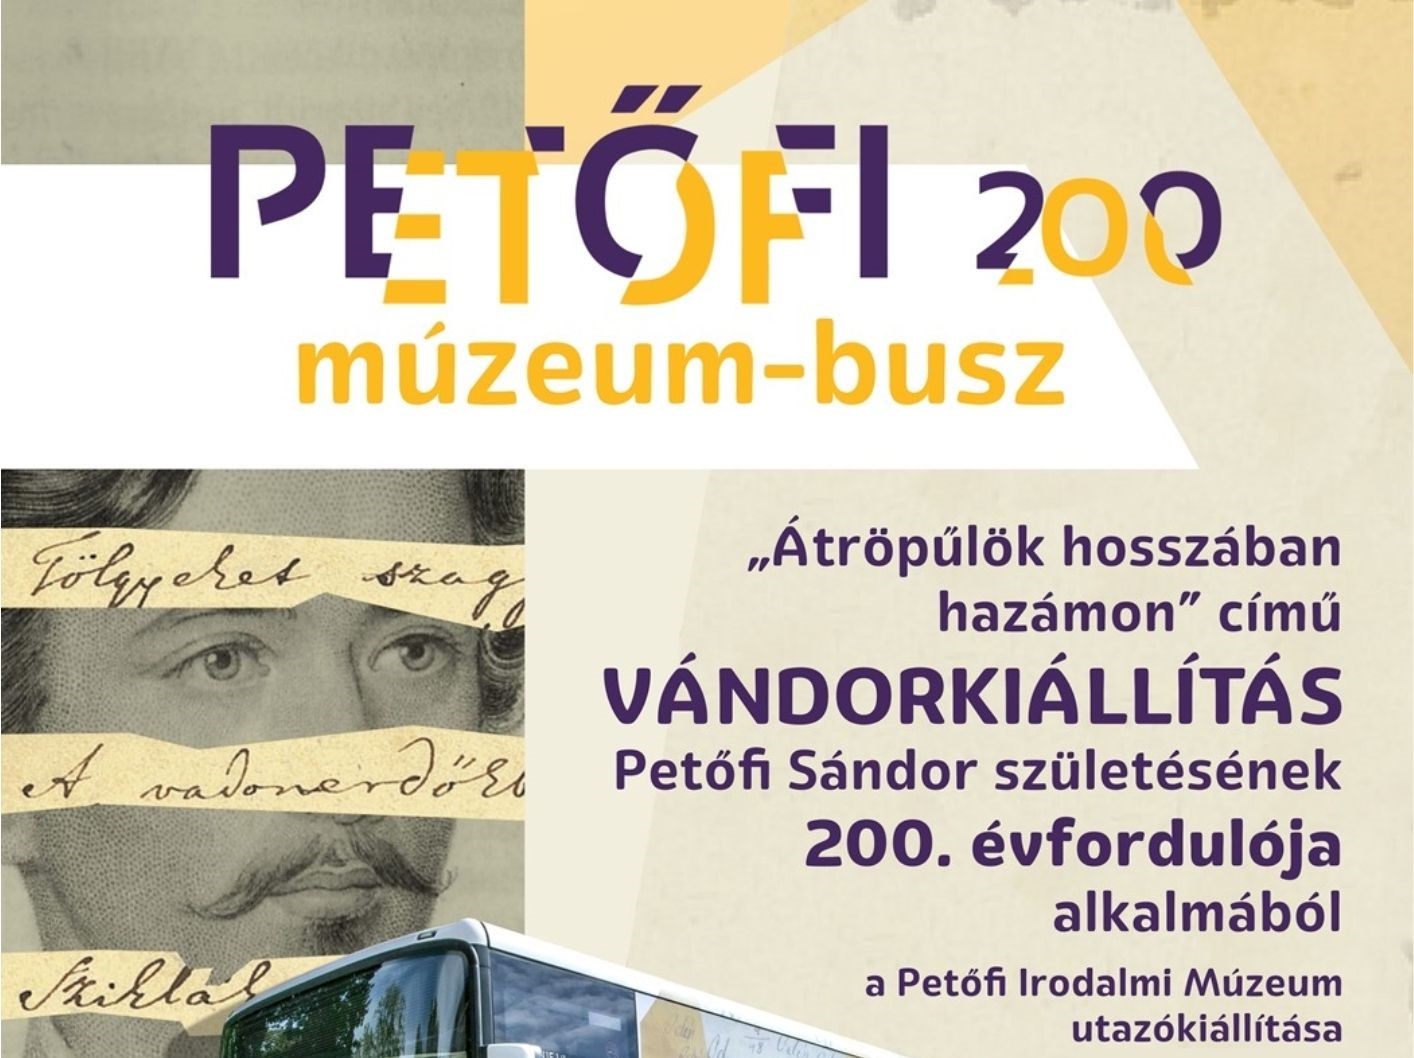 Gödre érkezik a Petőfi 200 múzeum busz – godihirnok.hu